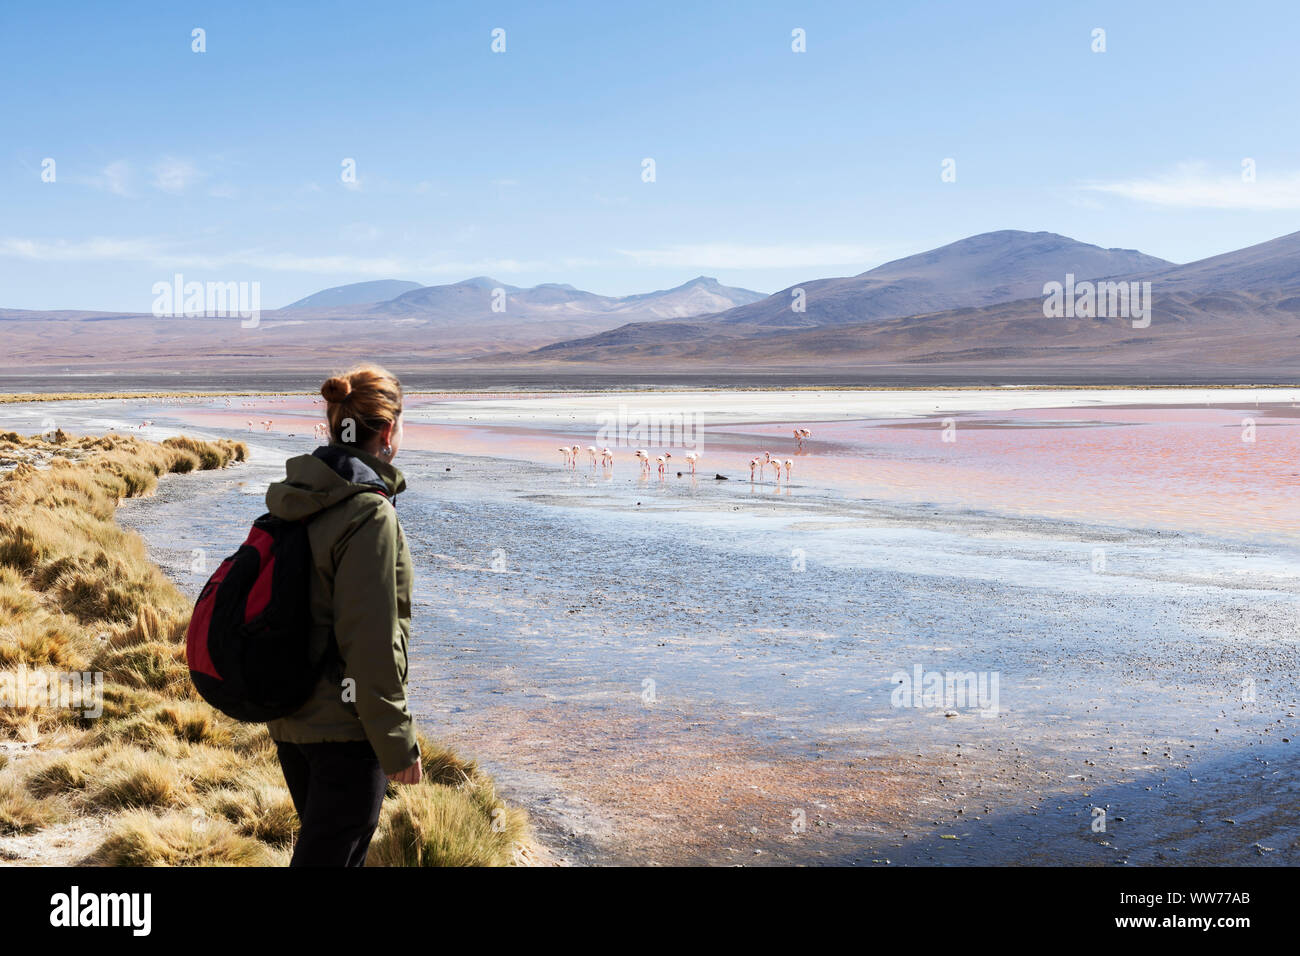 Bolivia, Eduardo Abaroa Andean Fauna National Reserve, Laguna Colorada, female observes flamingos Stock Photo